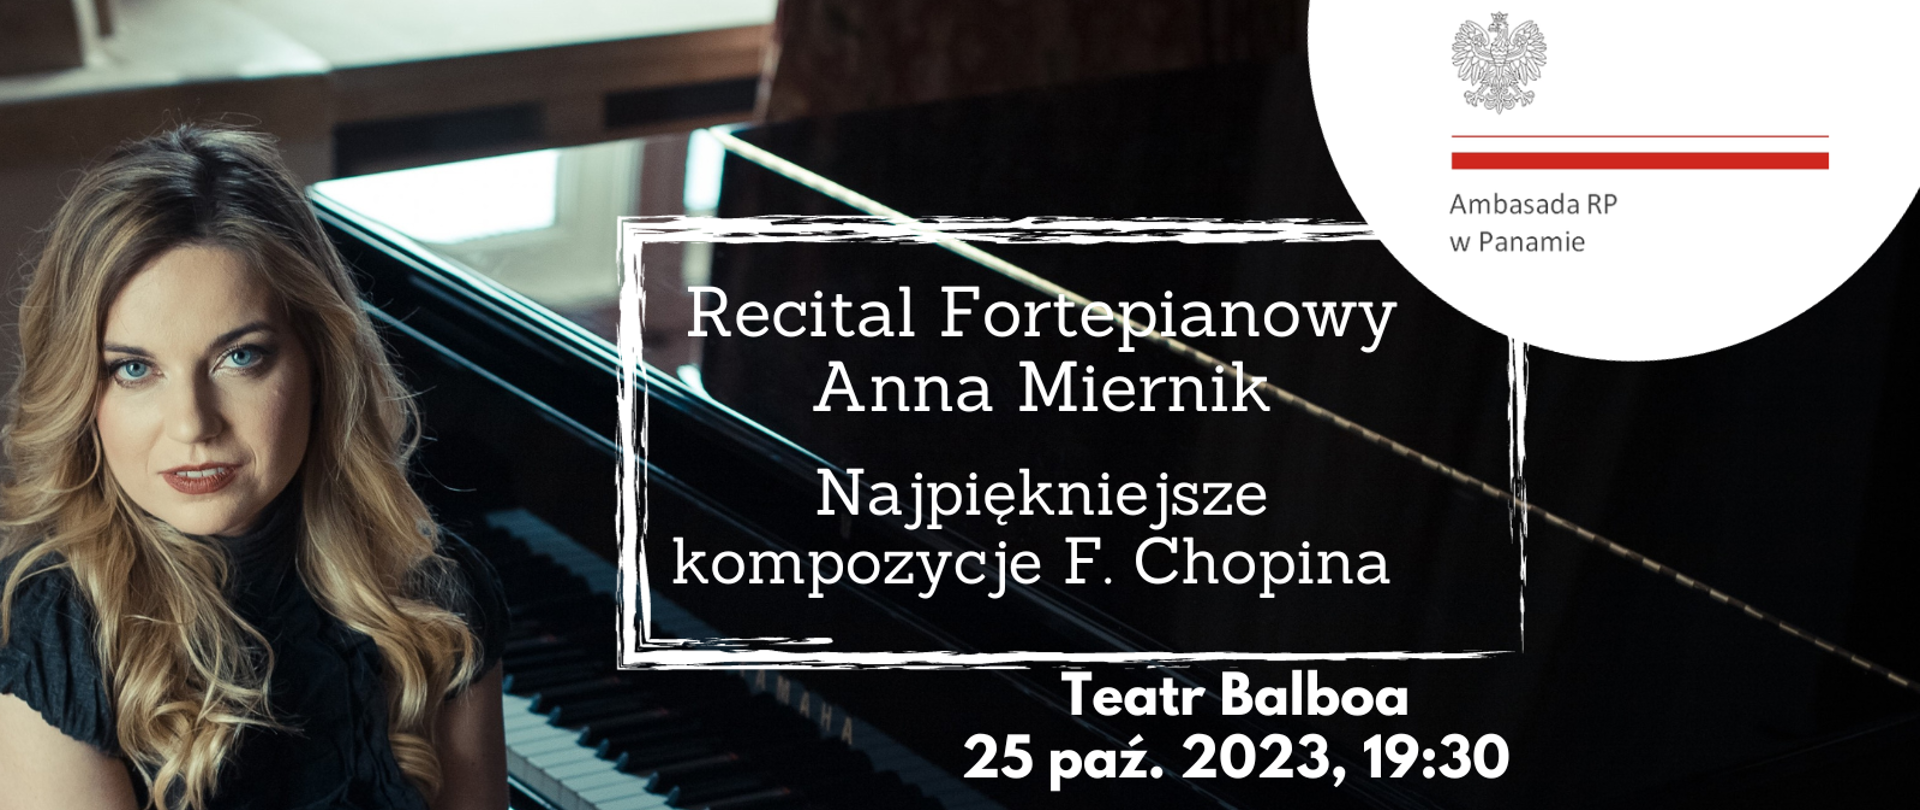 Recital_fortepianowy_AnnMiernik